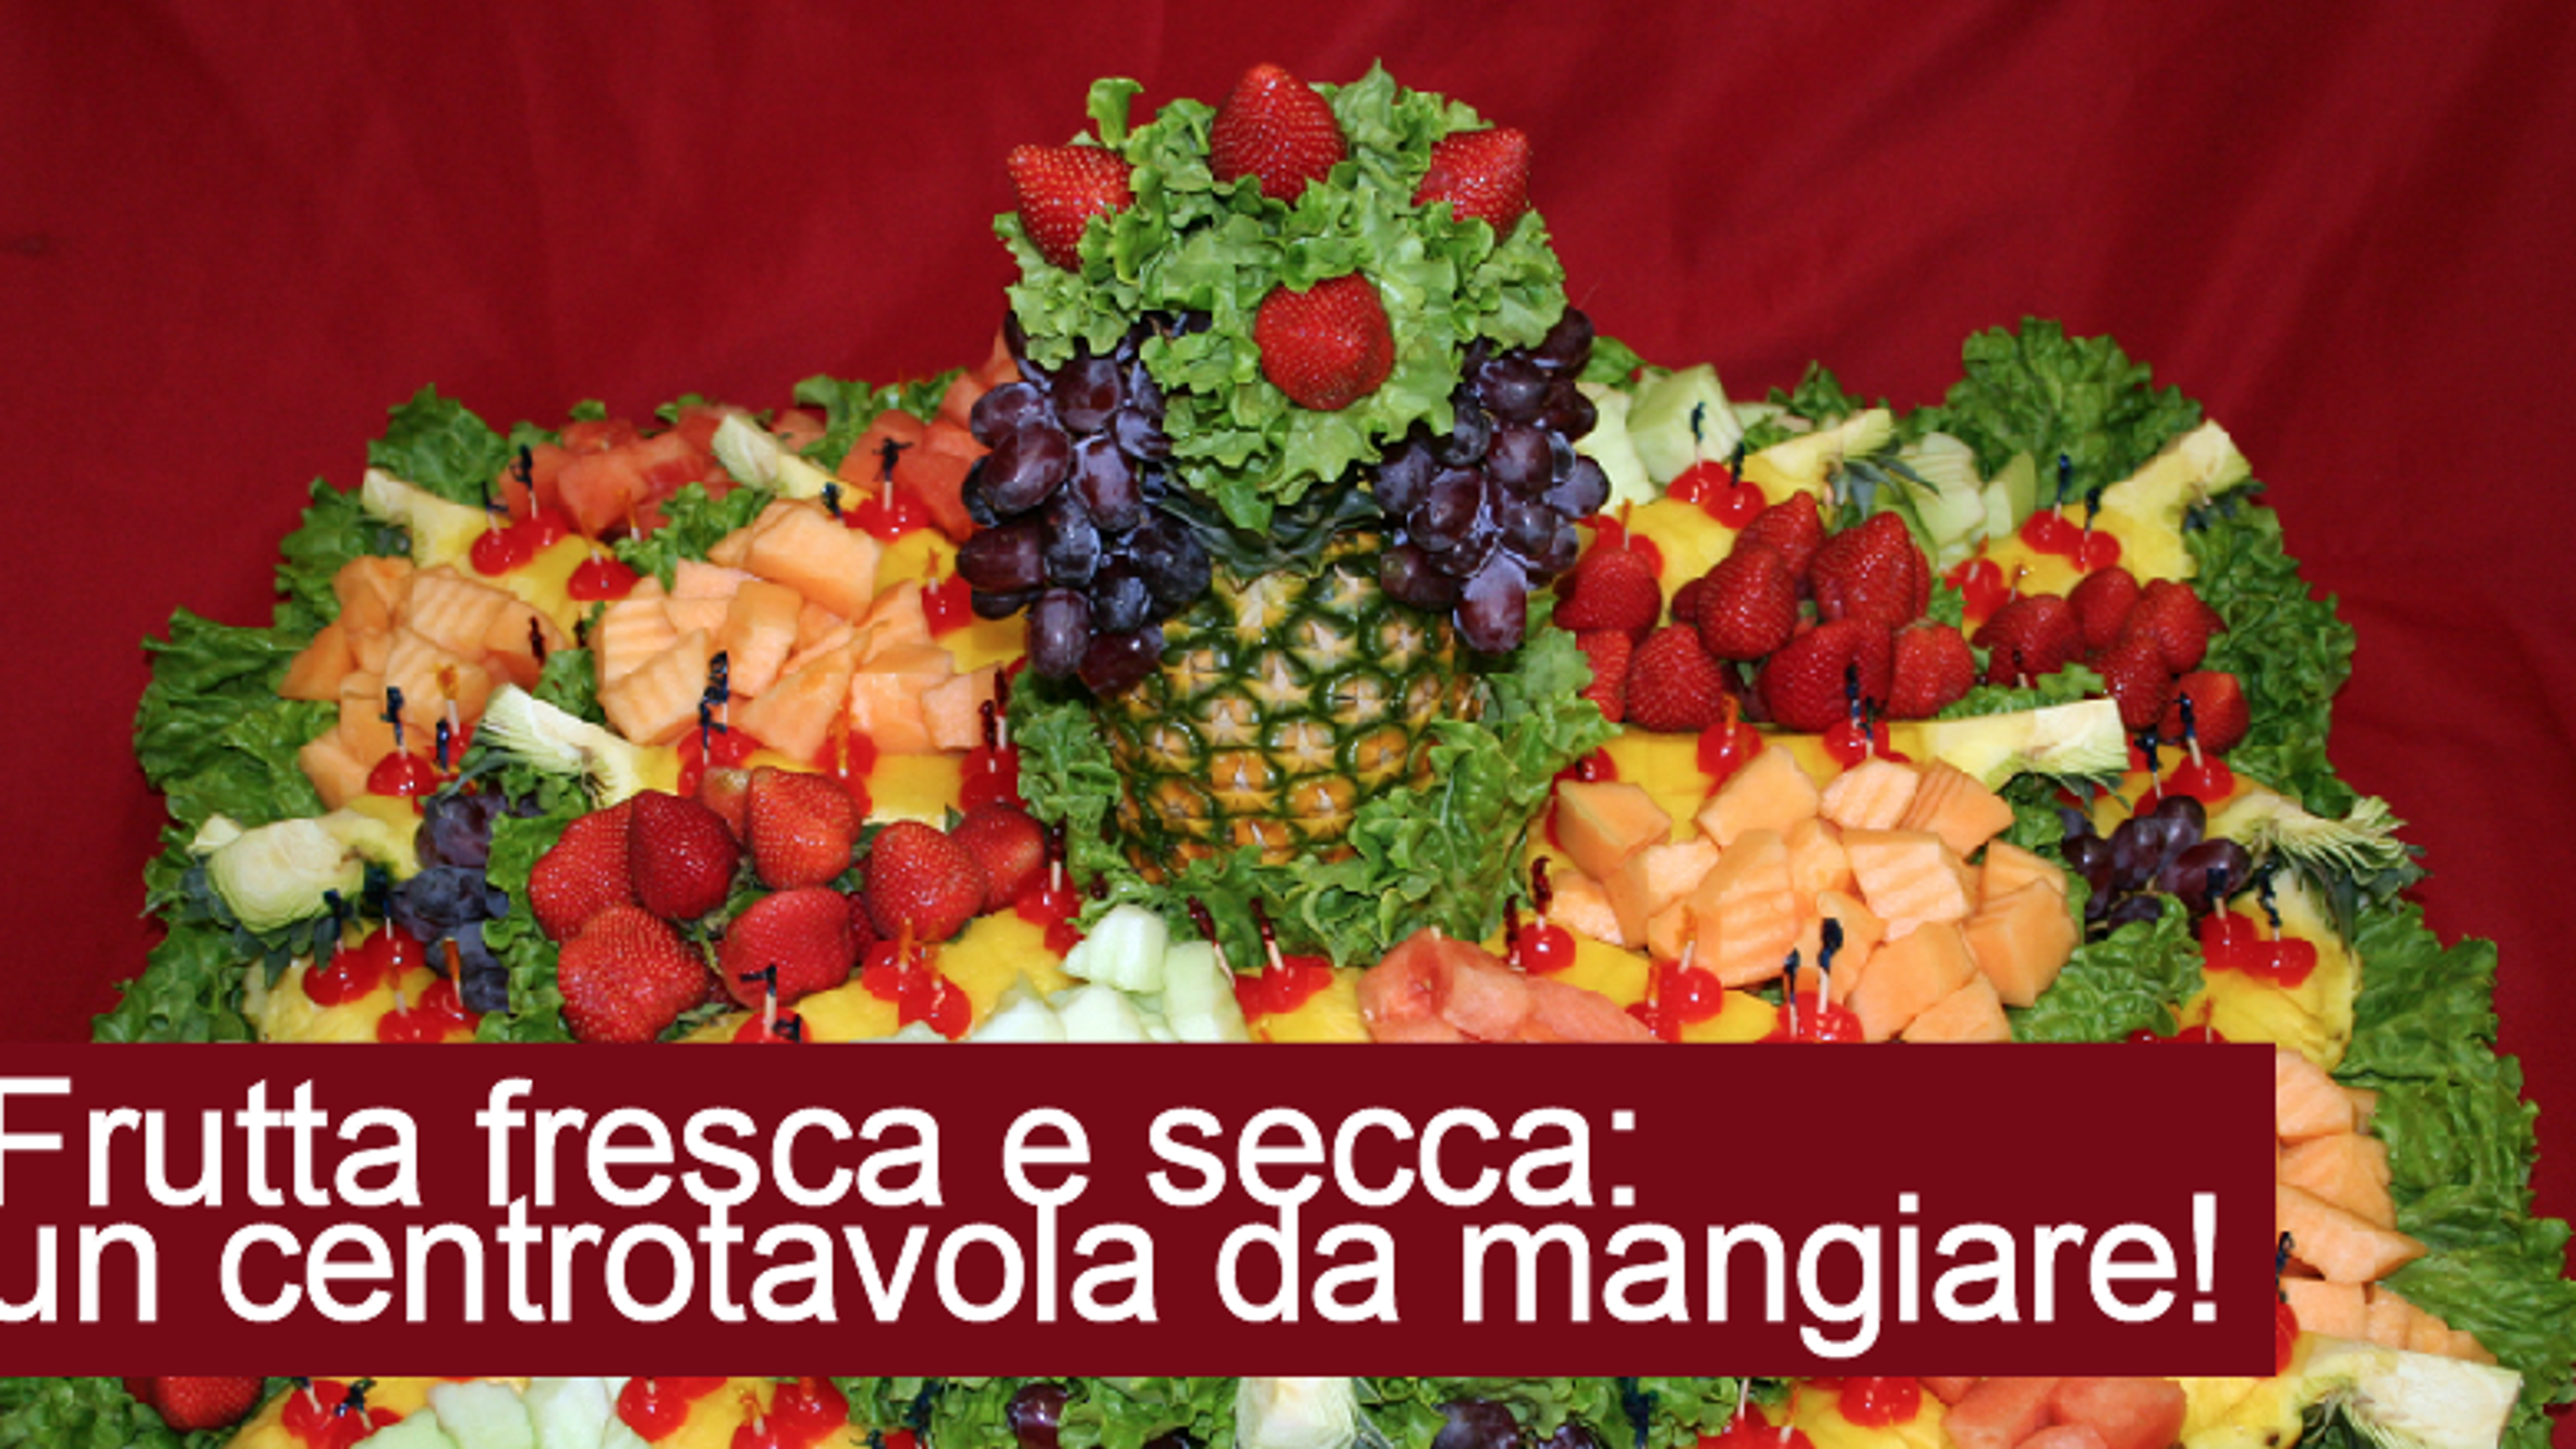 Frutta fresca e secca: un centrotavola da mangiare!